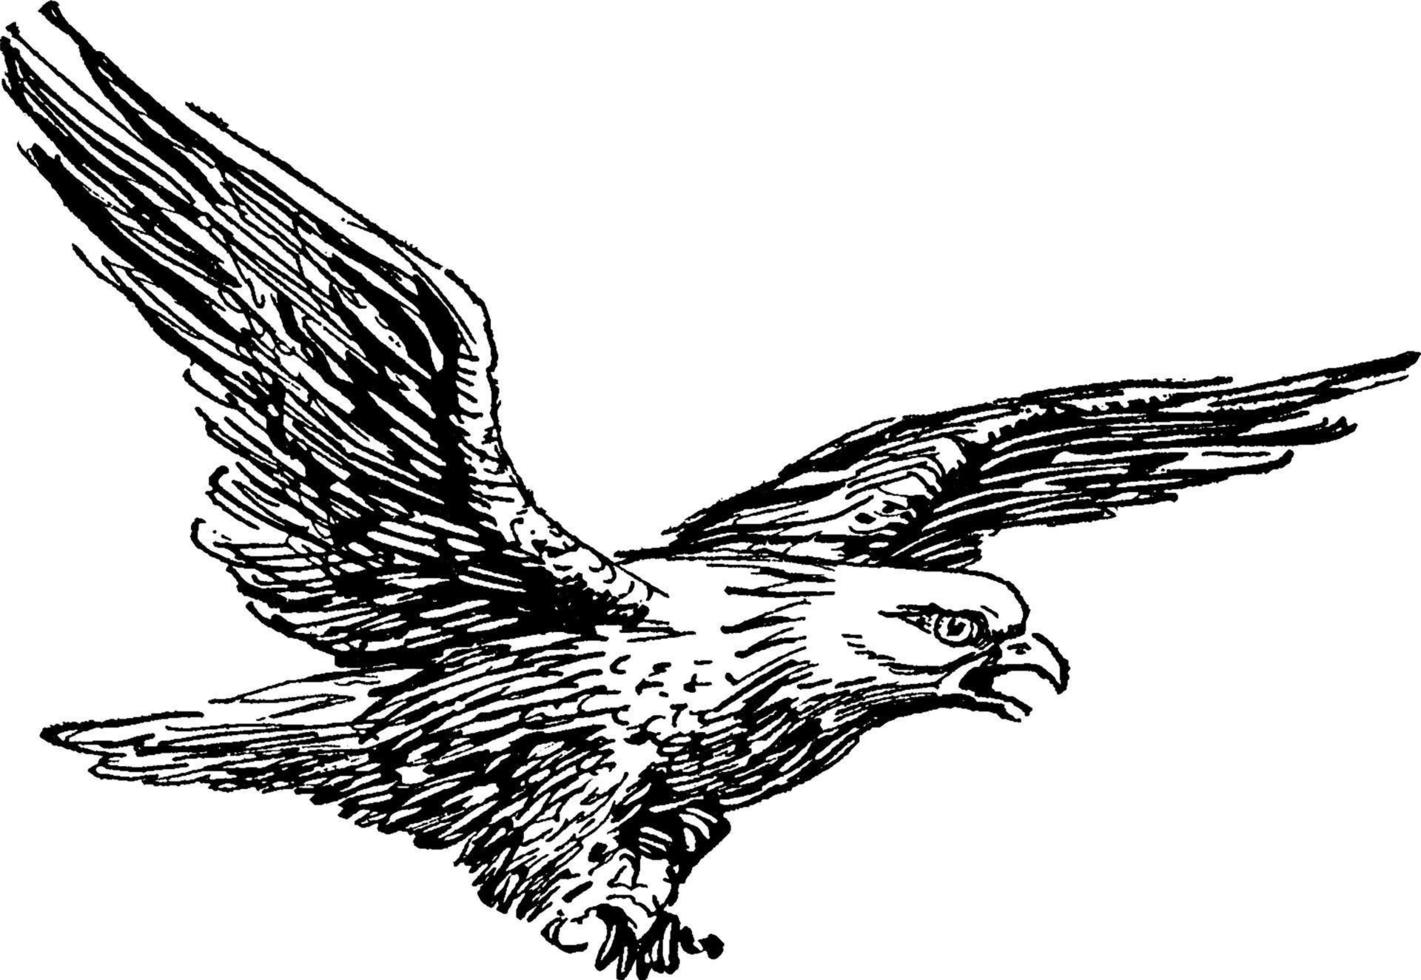 Bald Eagle or Haliaeetus leucocephalus, vintage illustration vector